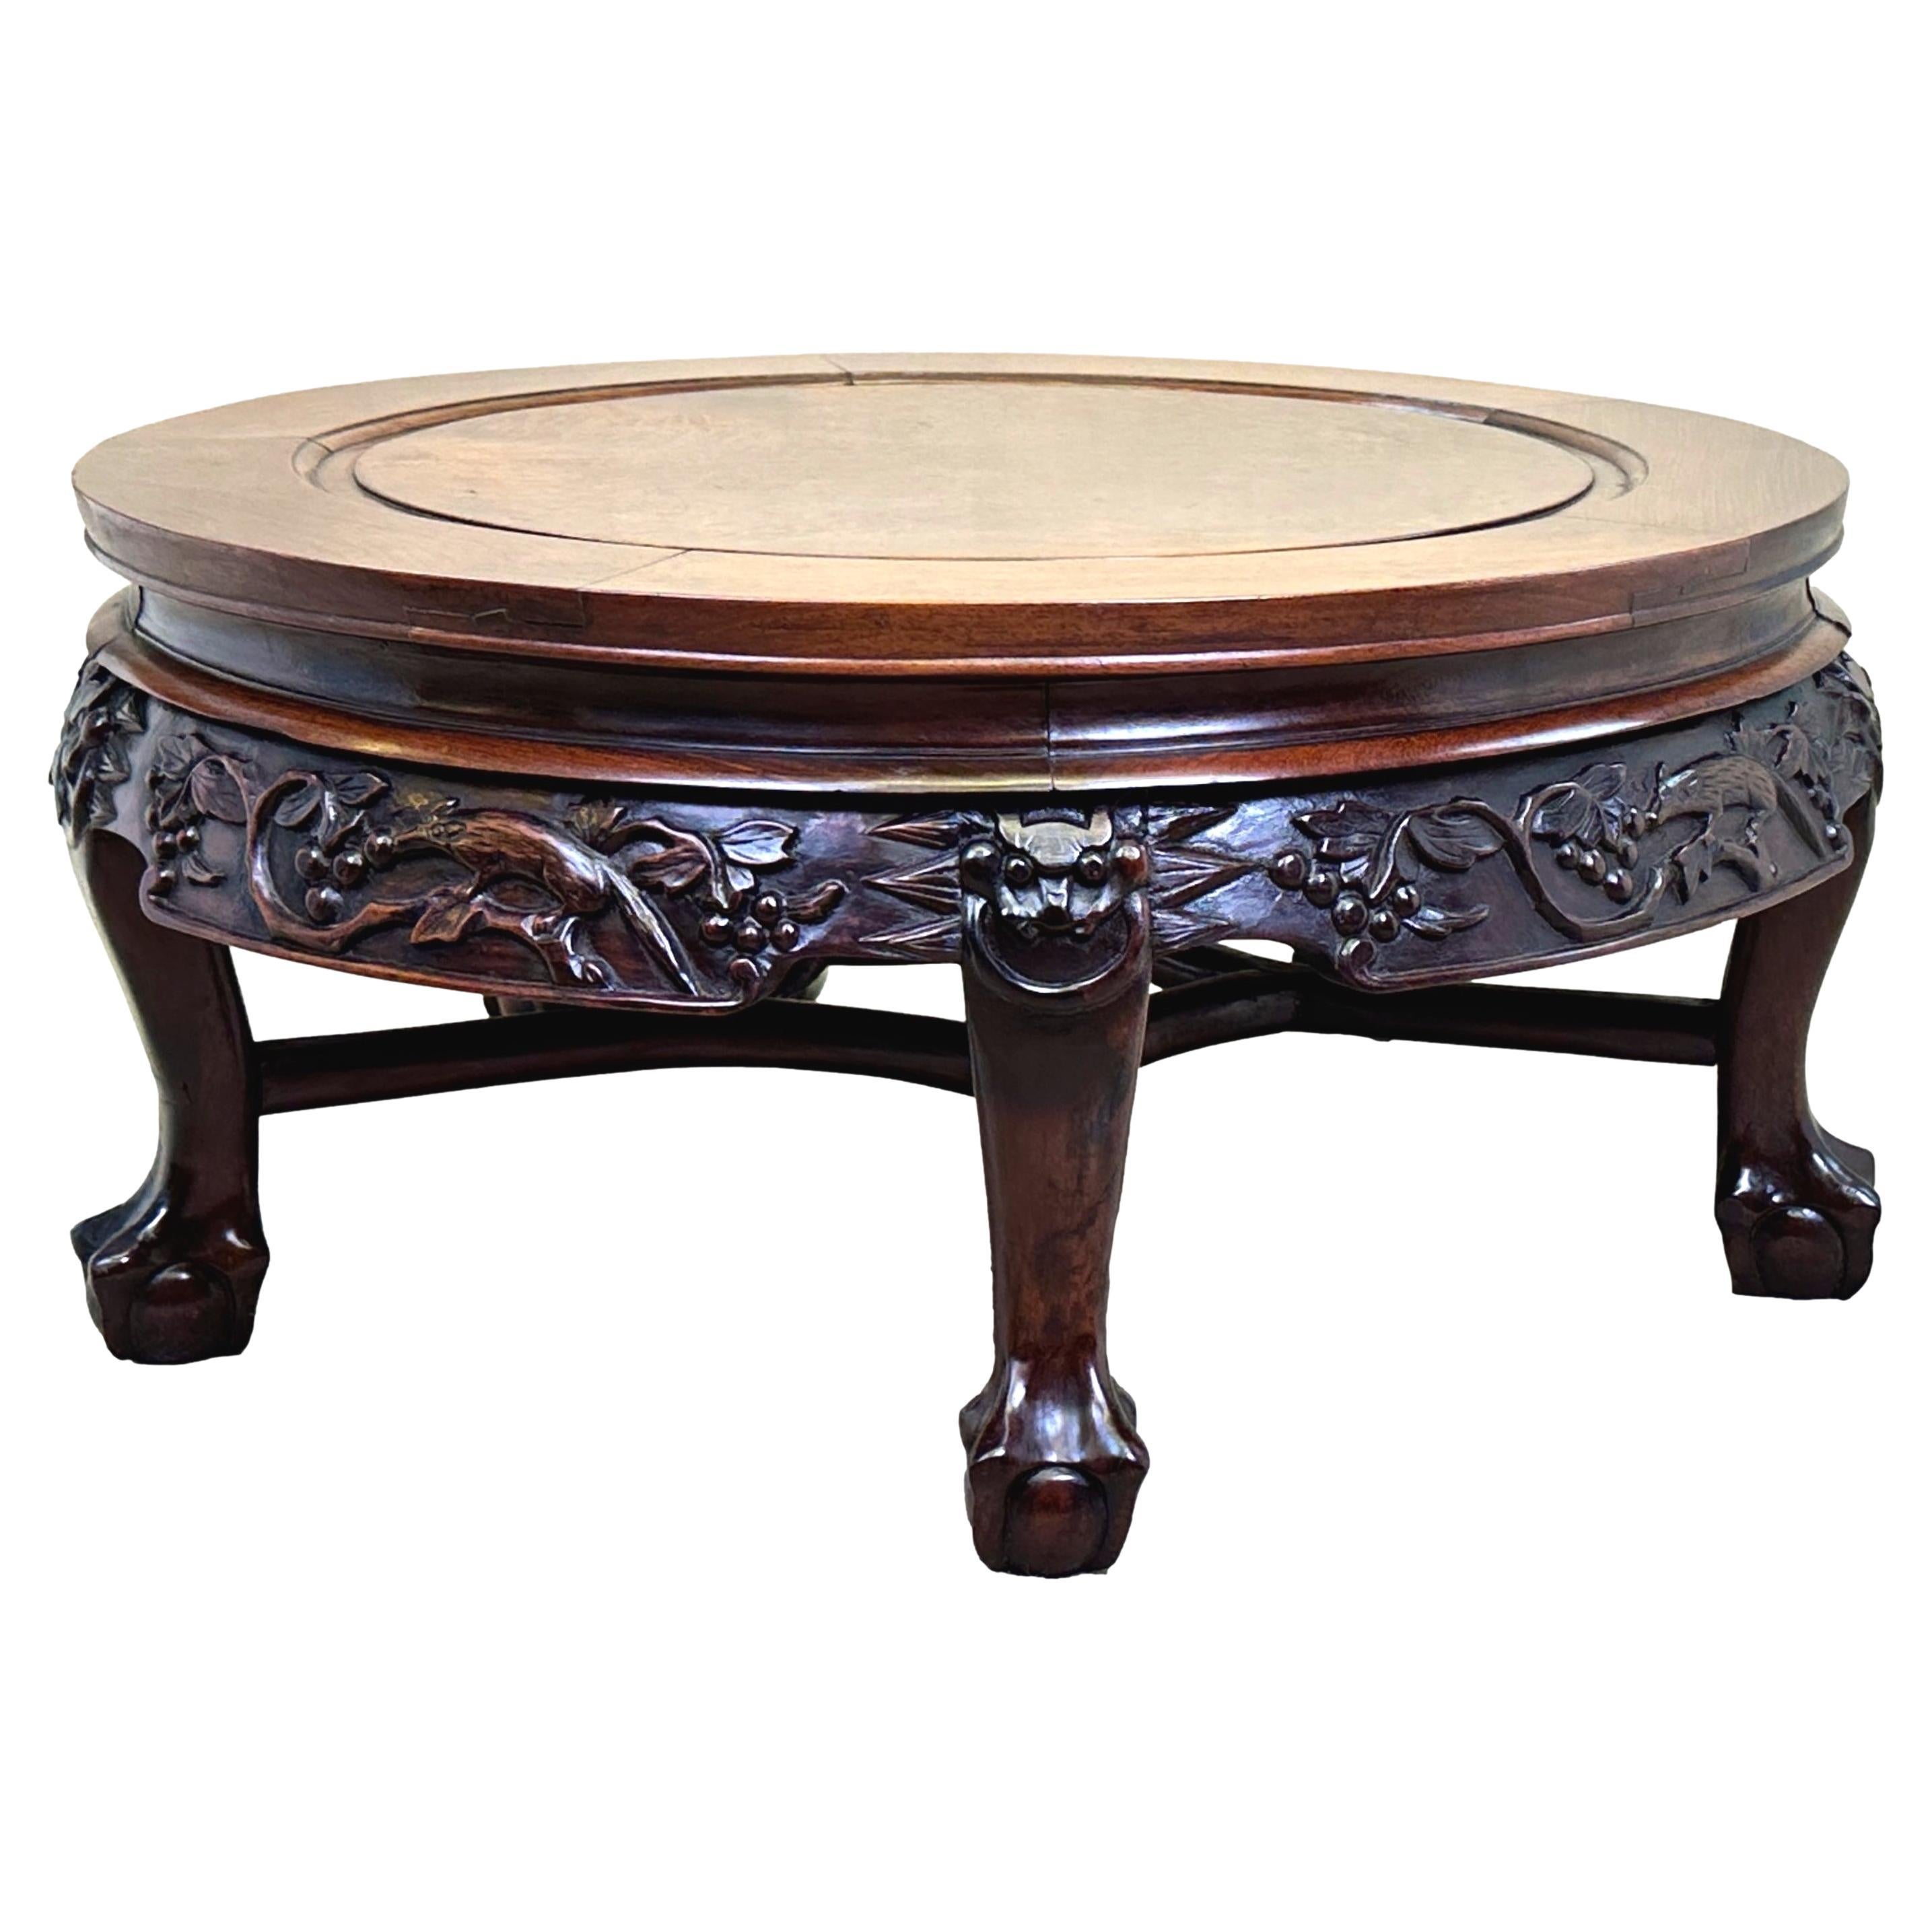 Table basse circulaire en bois dur oriental